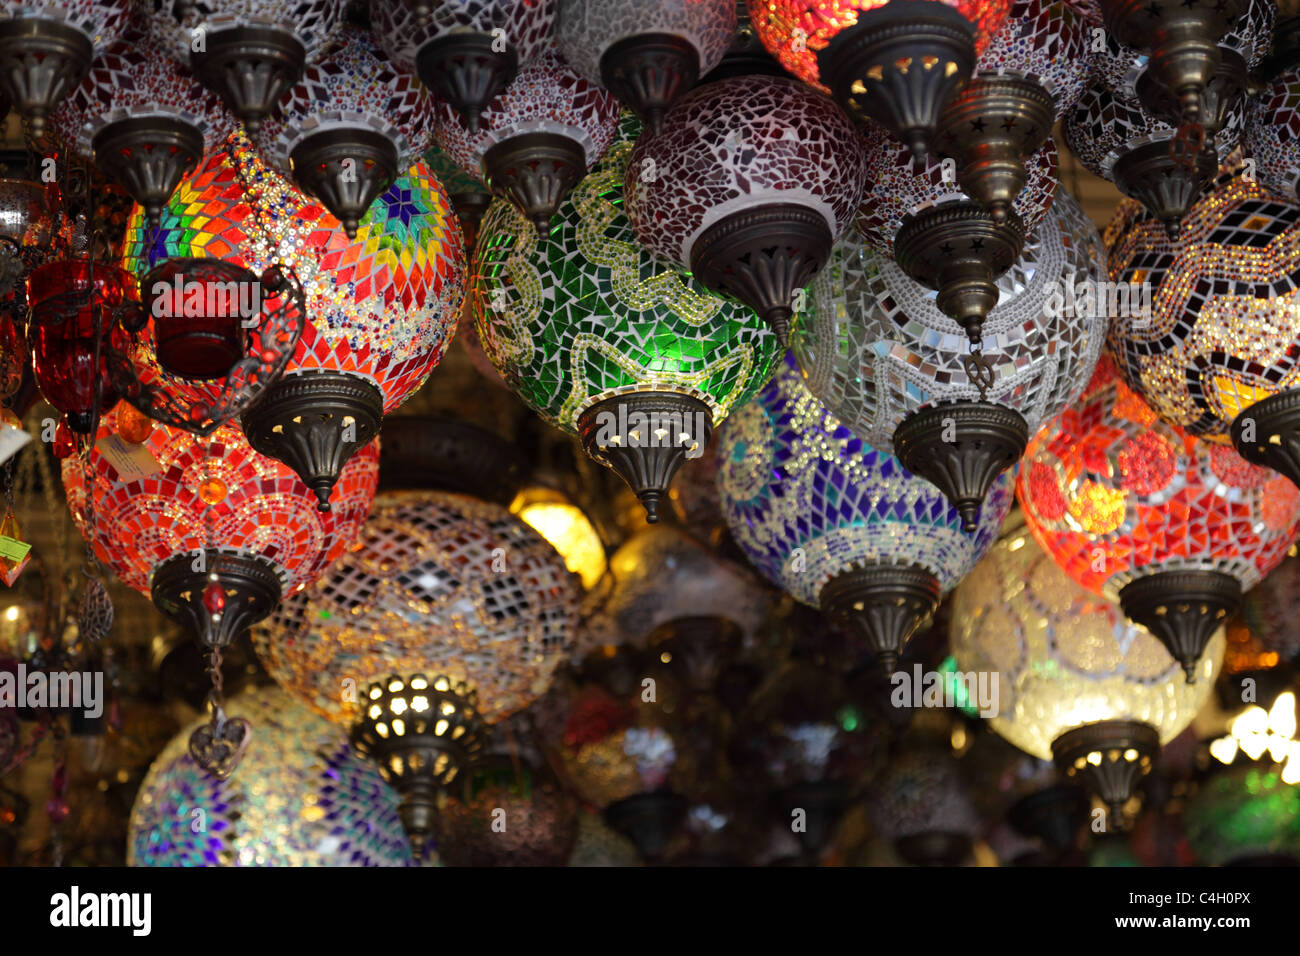 Türkische Lampen Shop im großen Basar in Istanbul, Türkei Stockfotografie -  Alamy